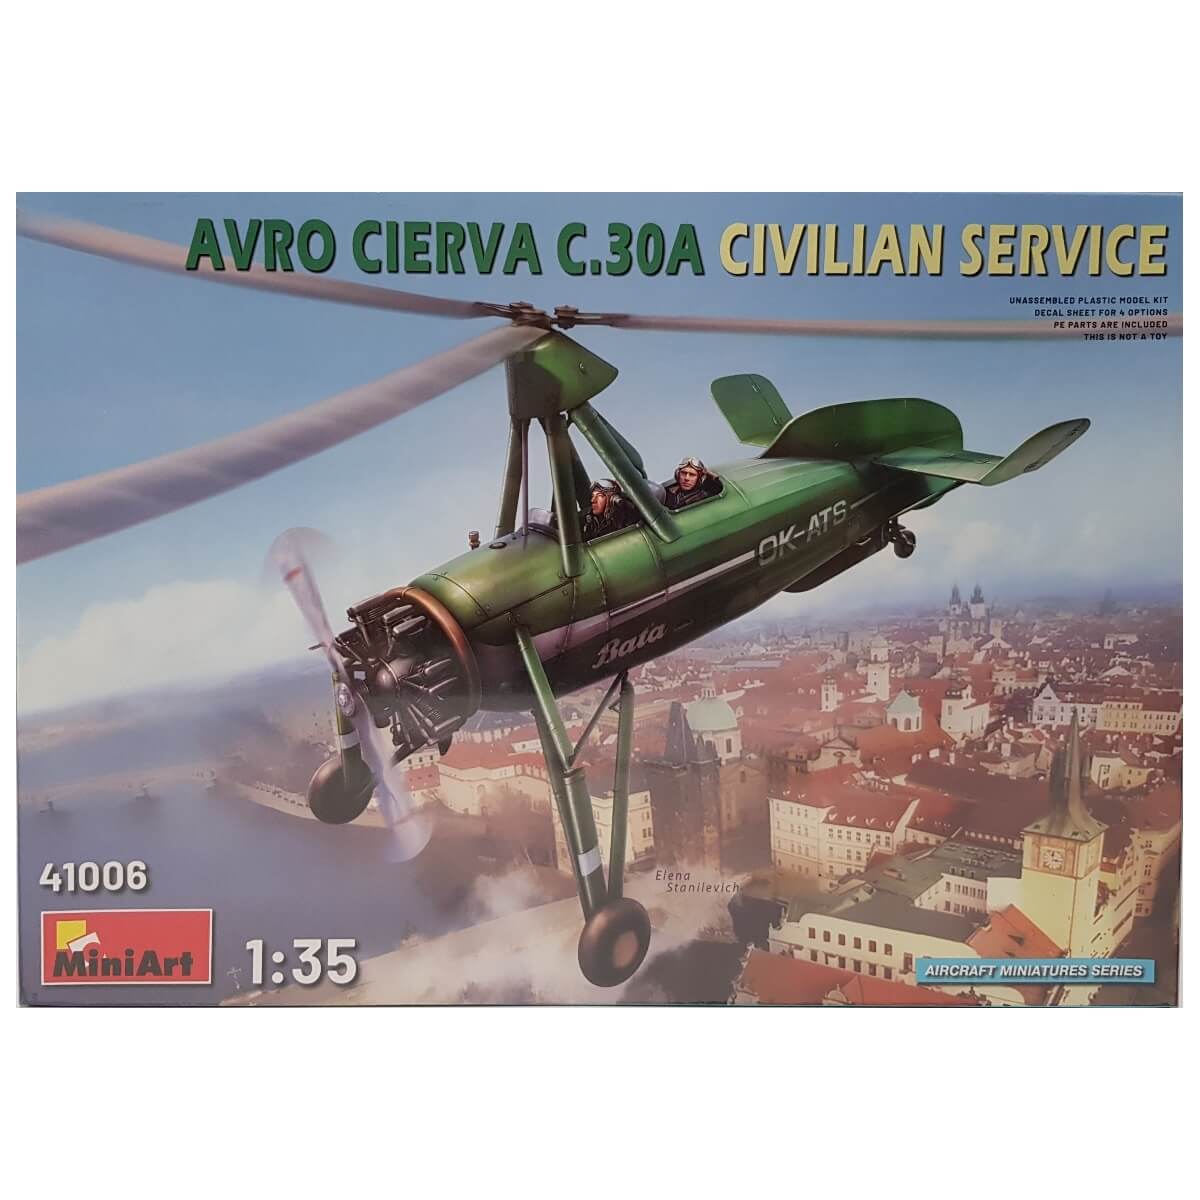 1:35 Avro Cierva C.30A Civilian Service - MINIART